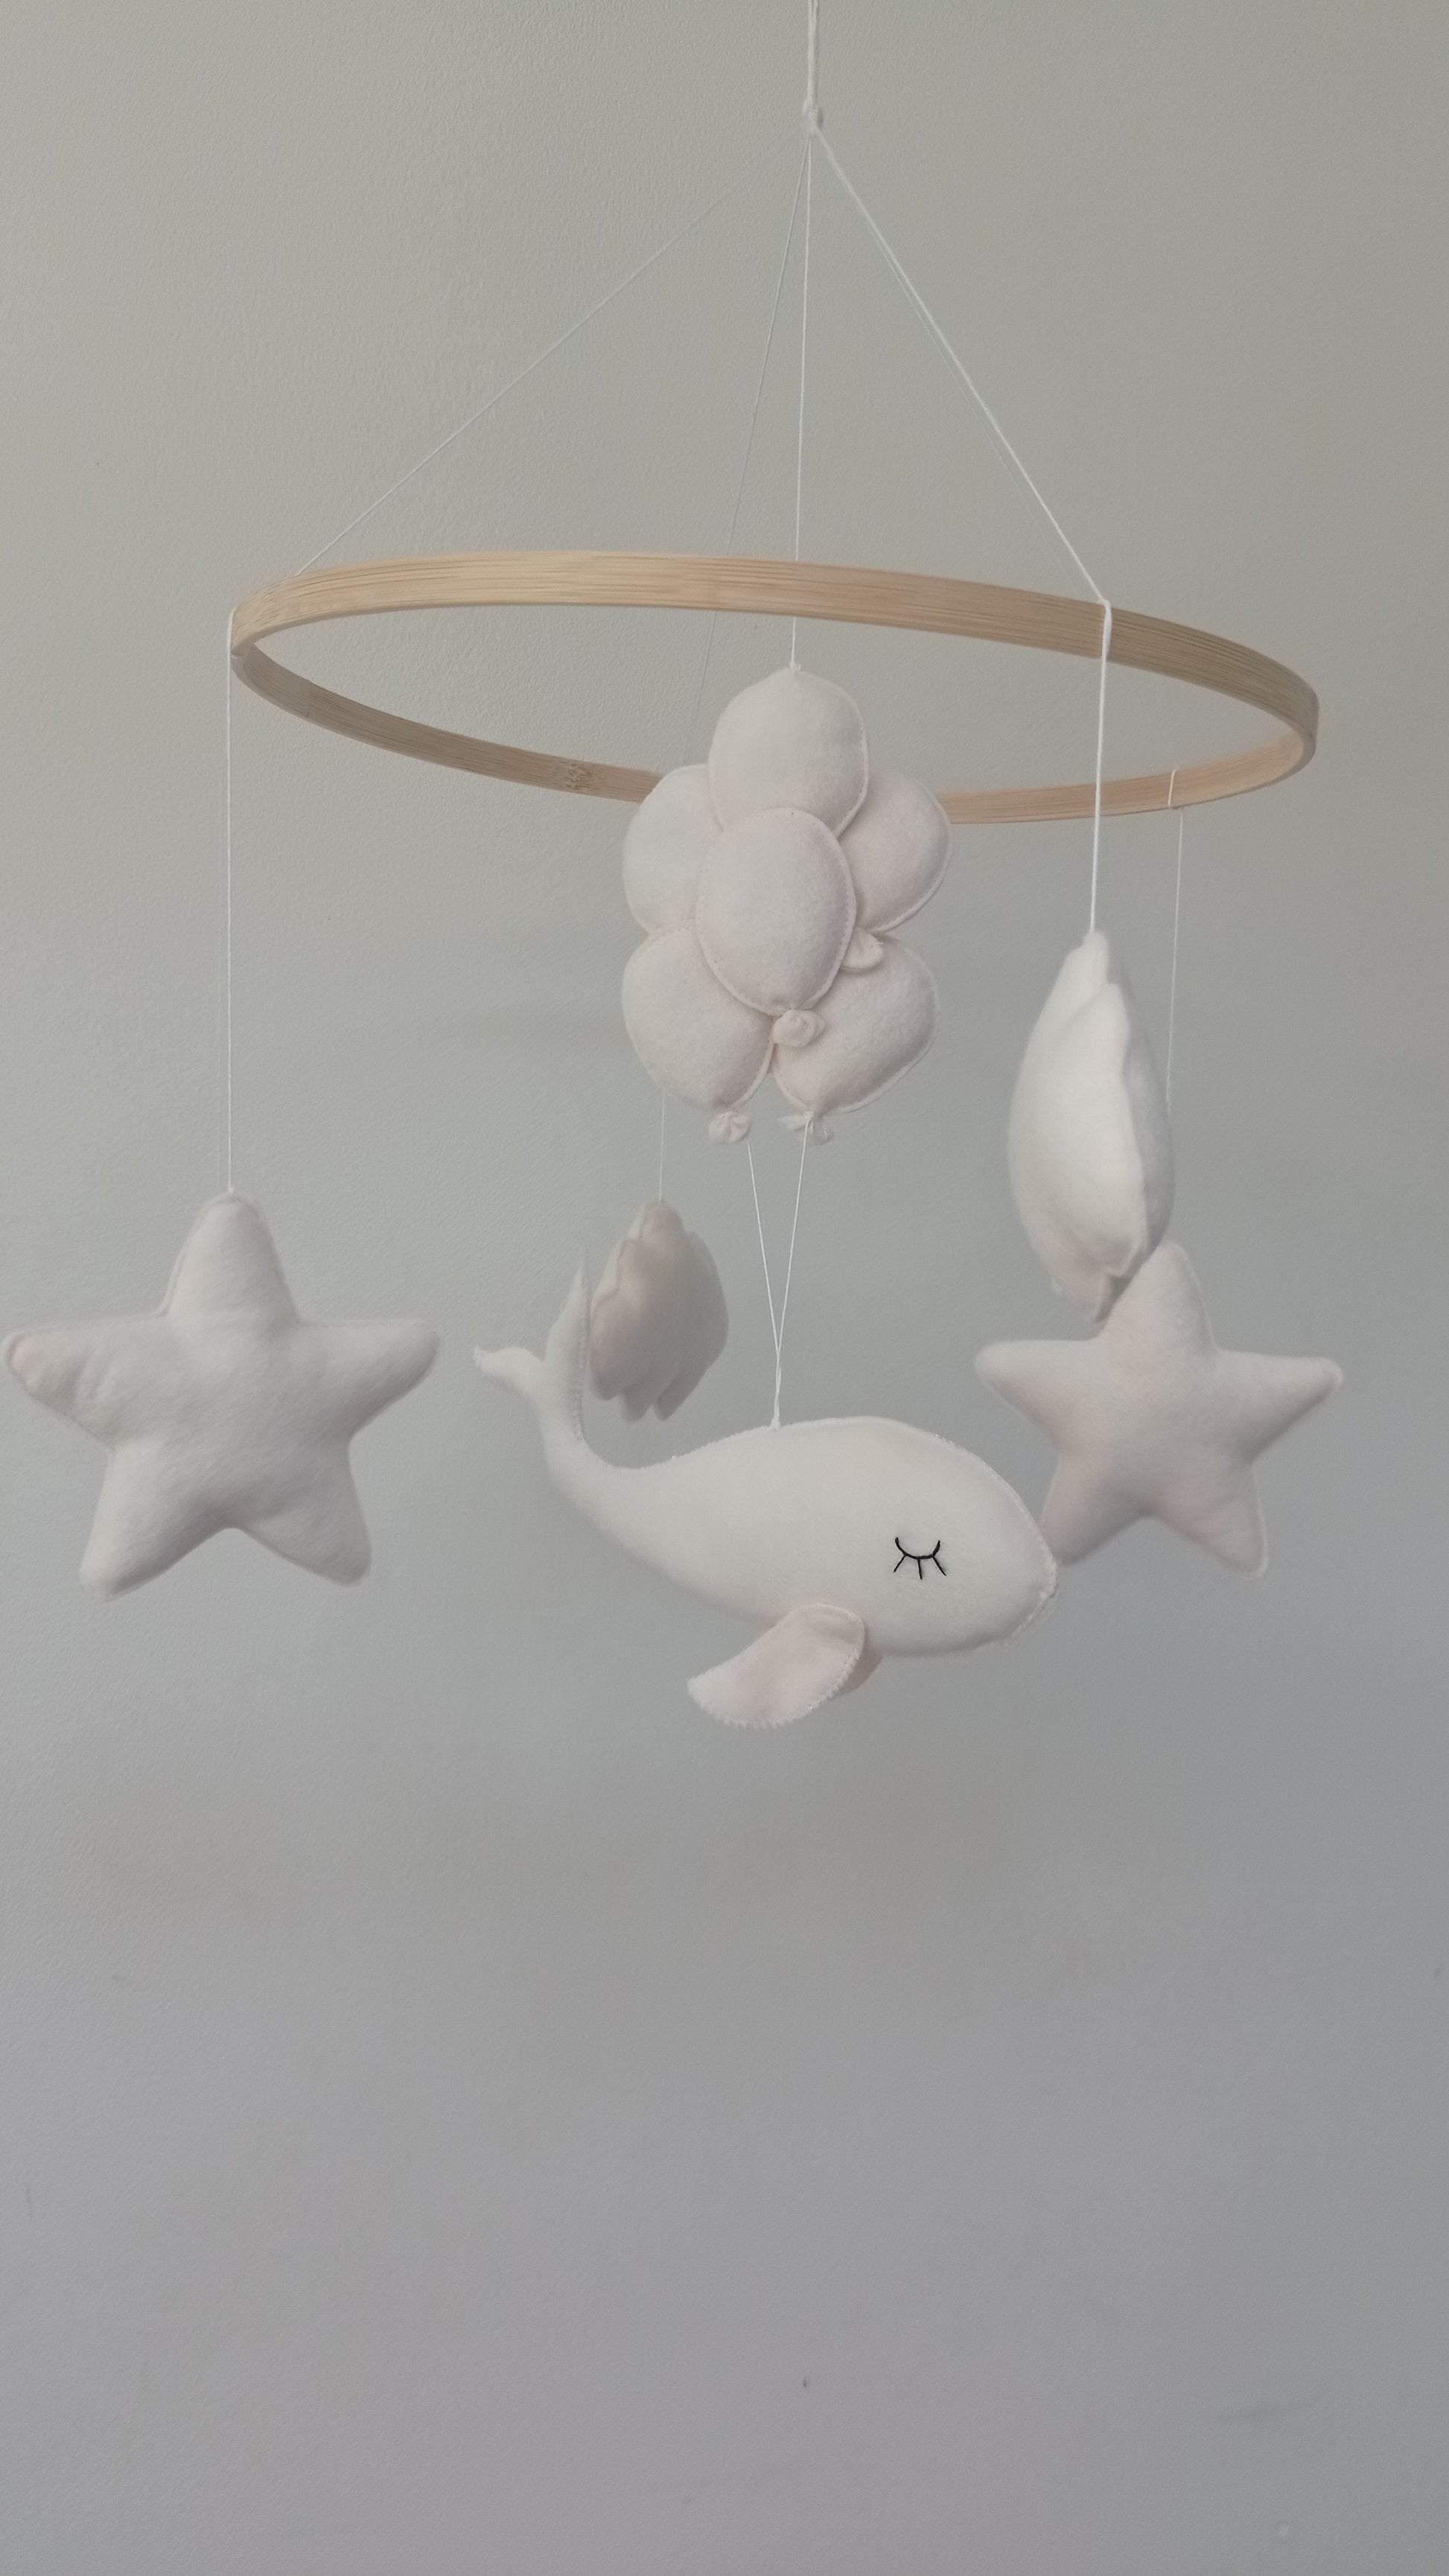 Mobile baleine blanche dans le ciel pour décoration de chambre d'enfants.